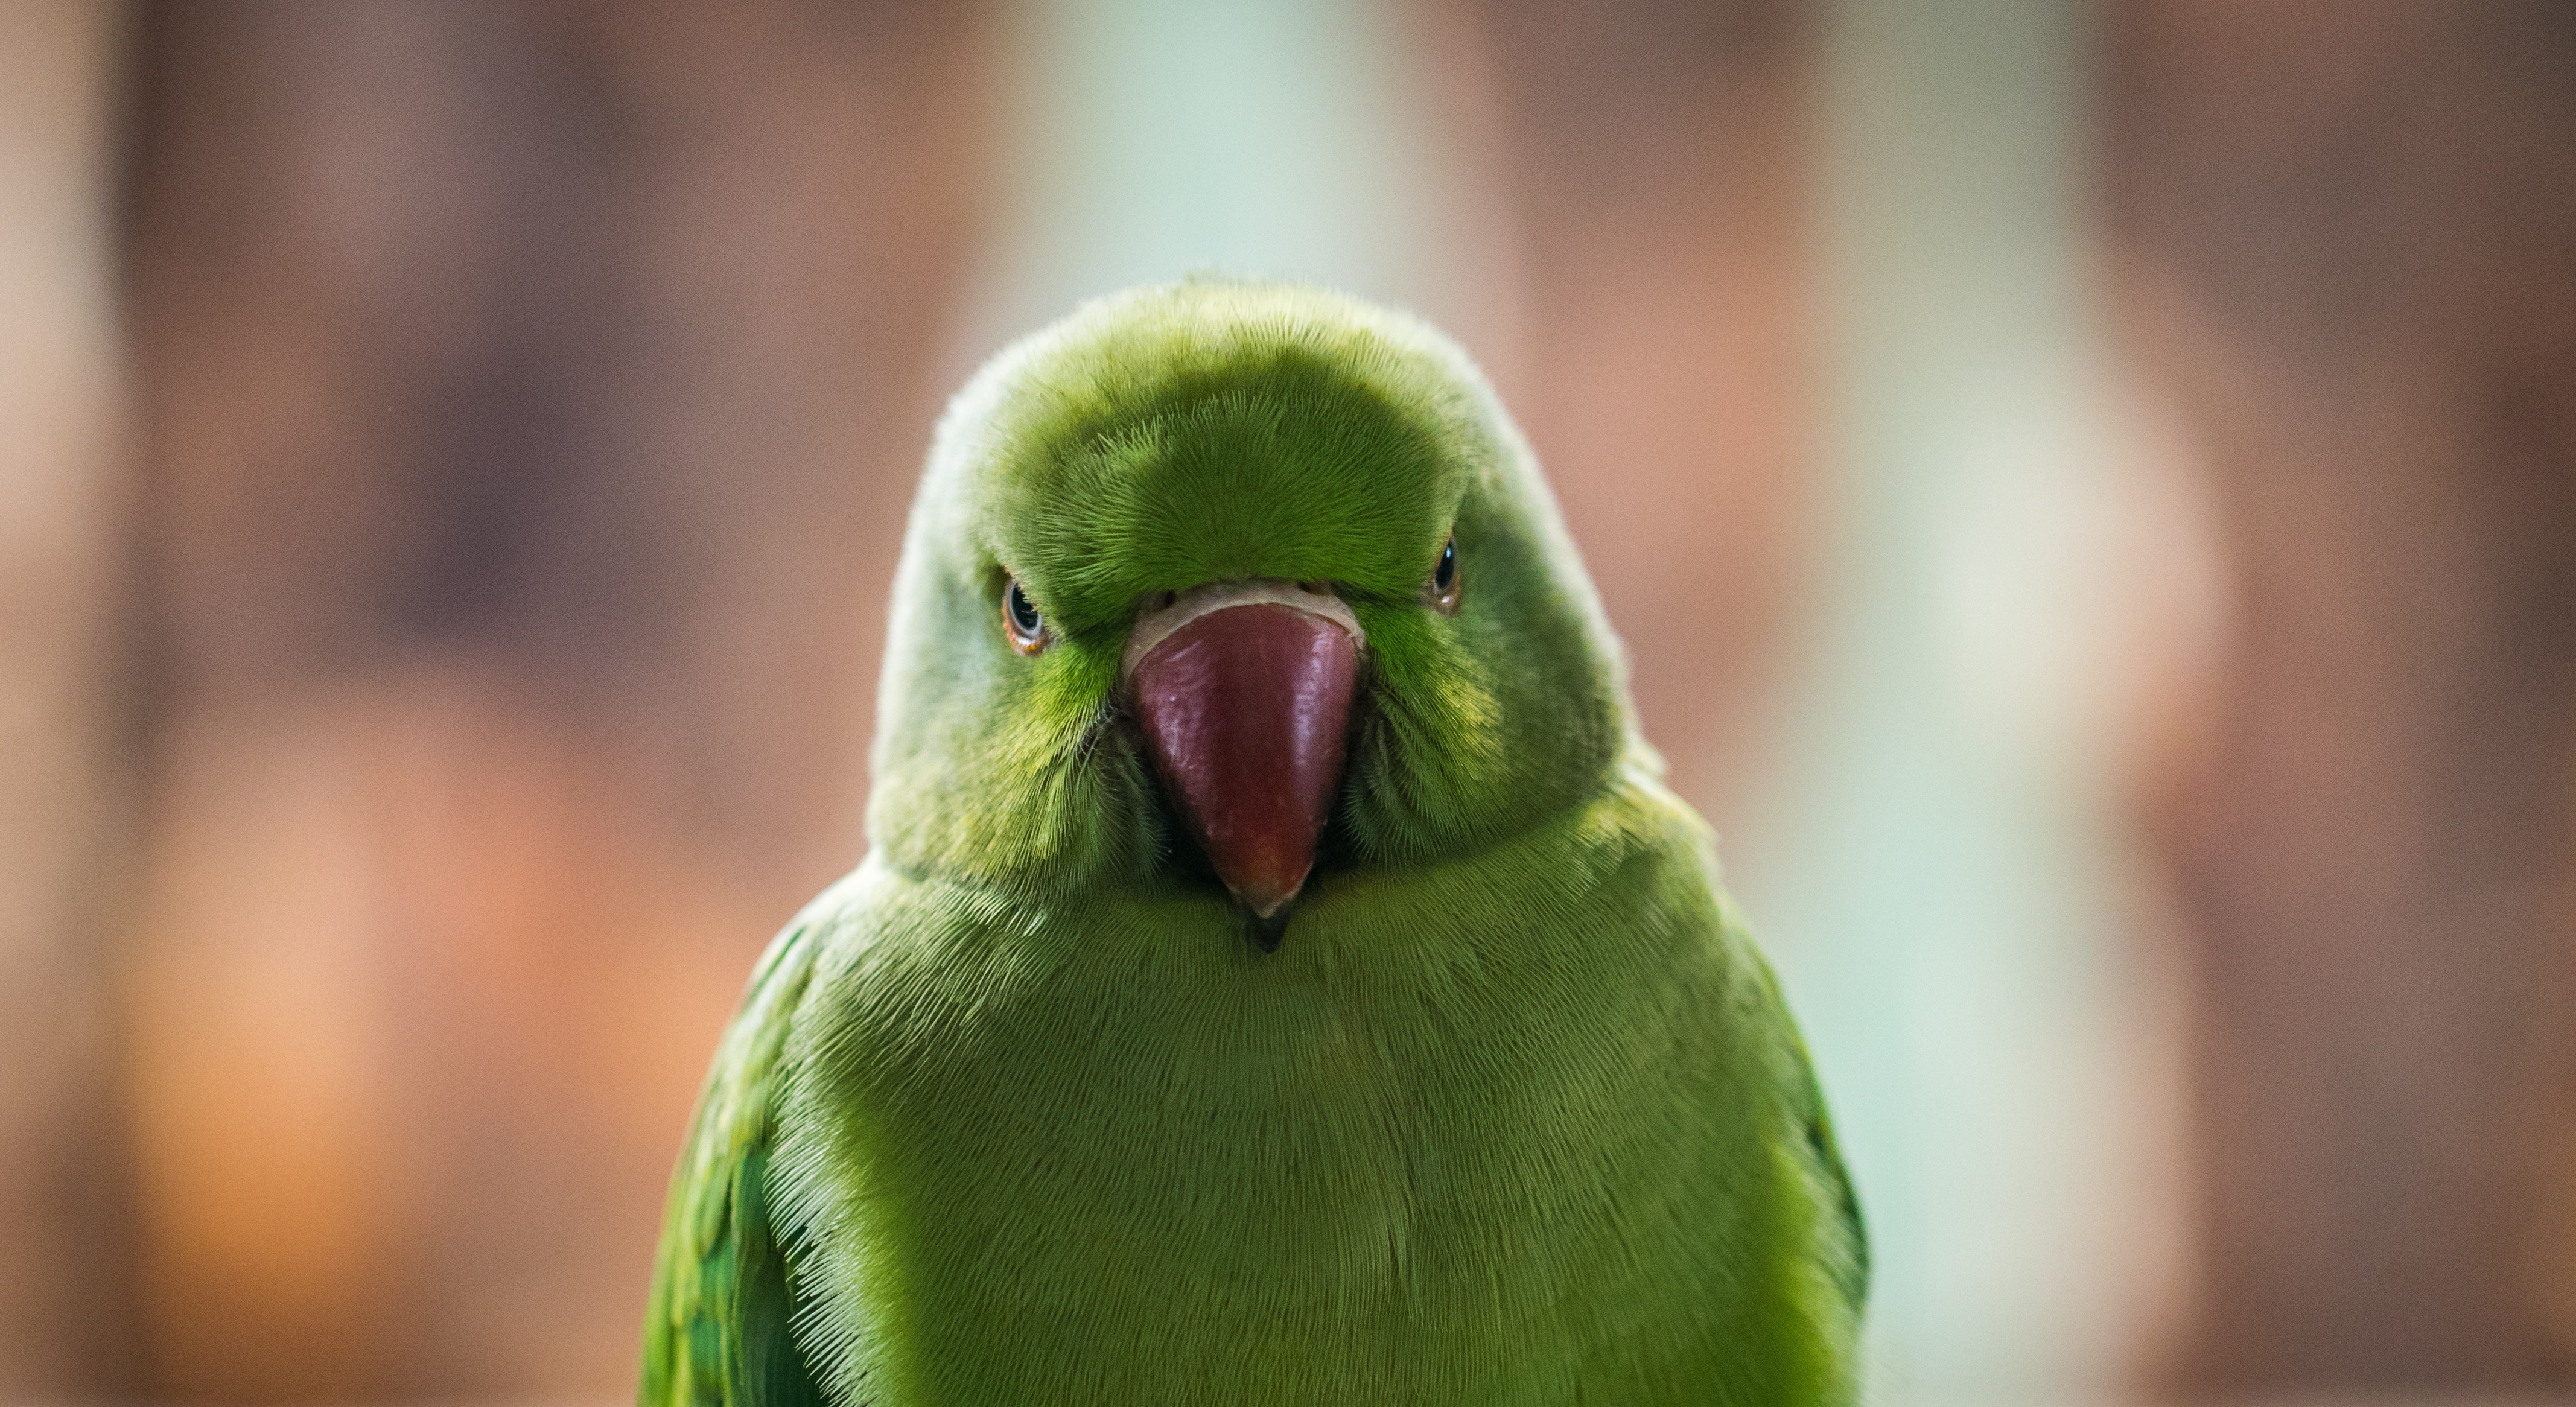 Попугай открывает рот. Волнистый попугай зеленый. Попугай улыбается. Взгляд попугая. Клюв попугая.